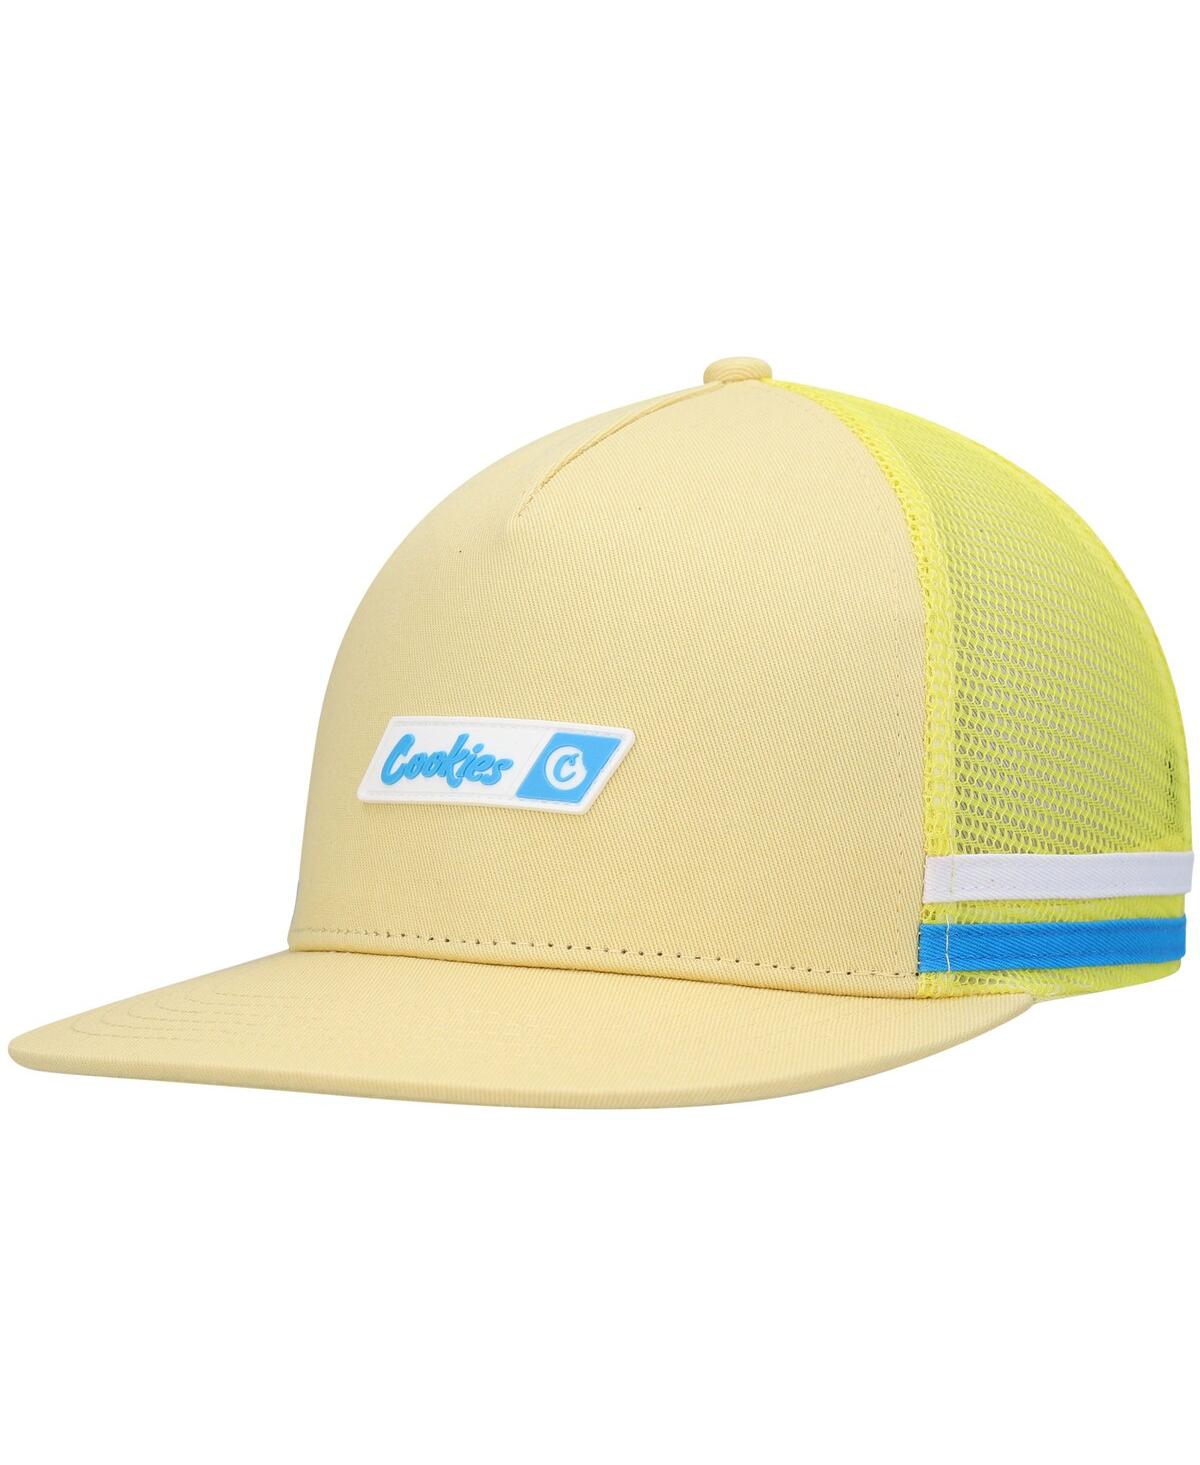 Cookies Men's  Yellow Bal Harbor Trucker Snapback Hat